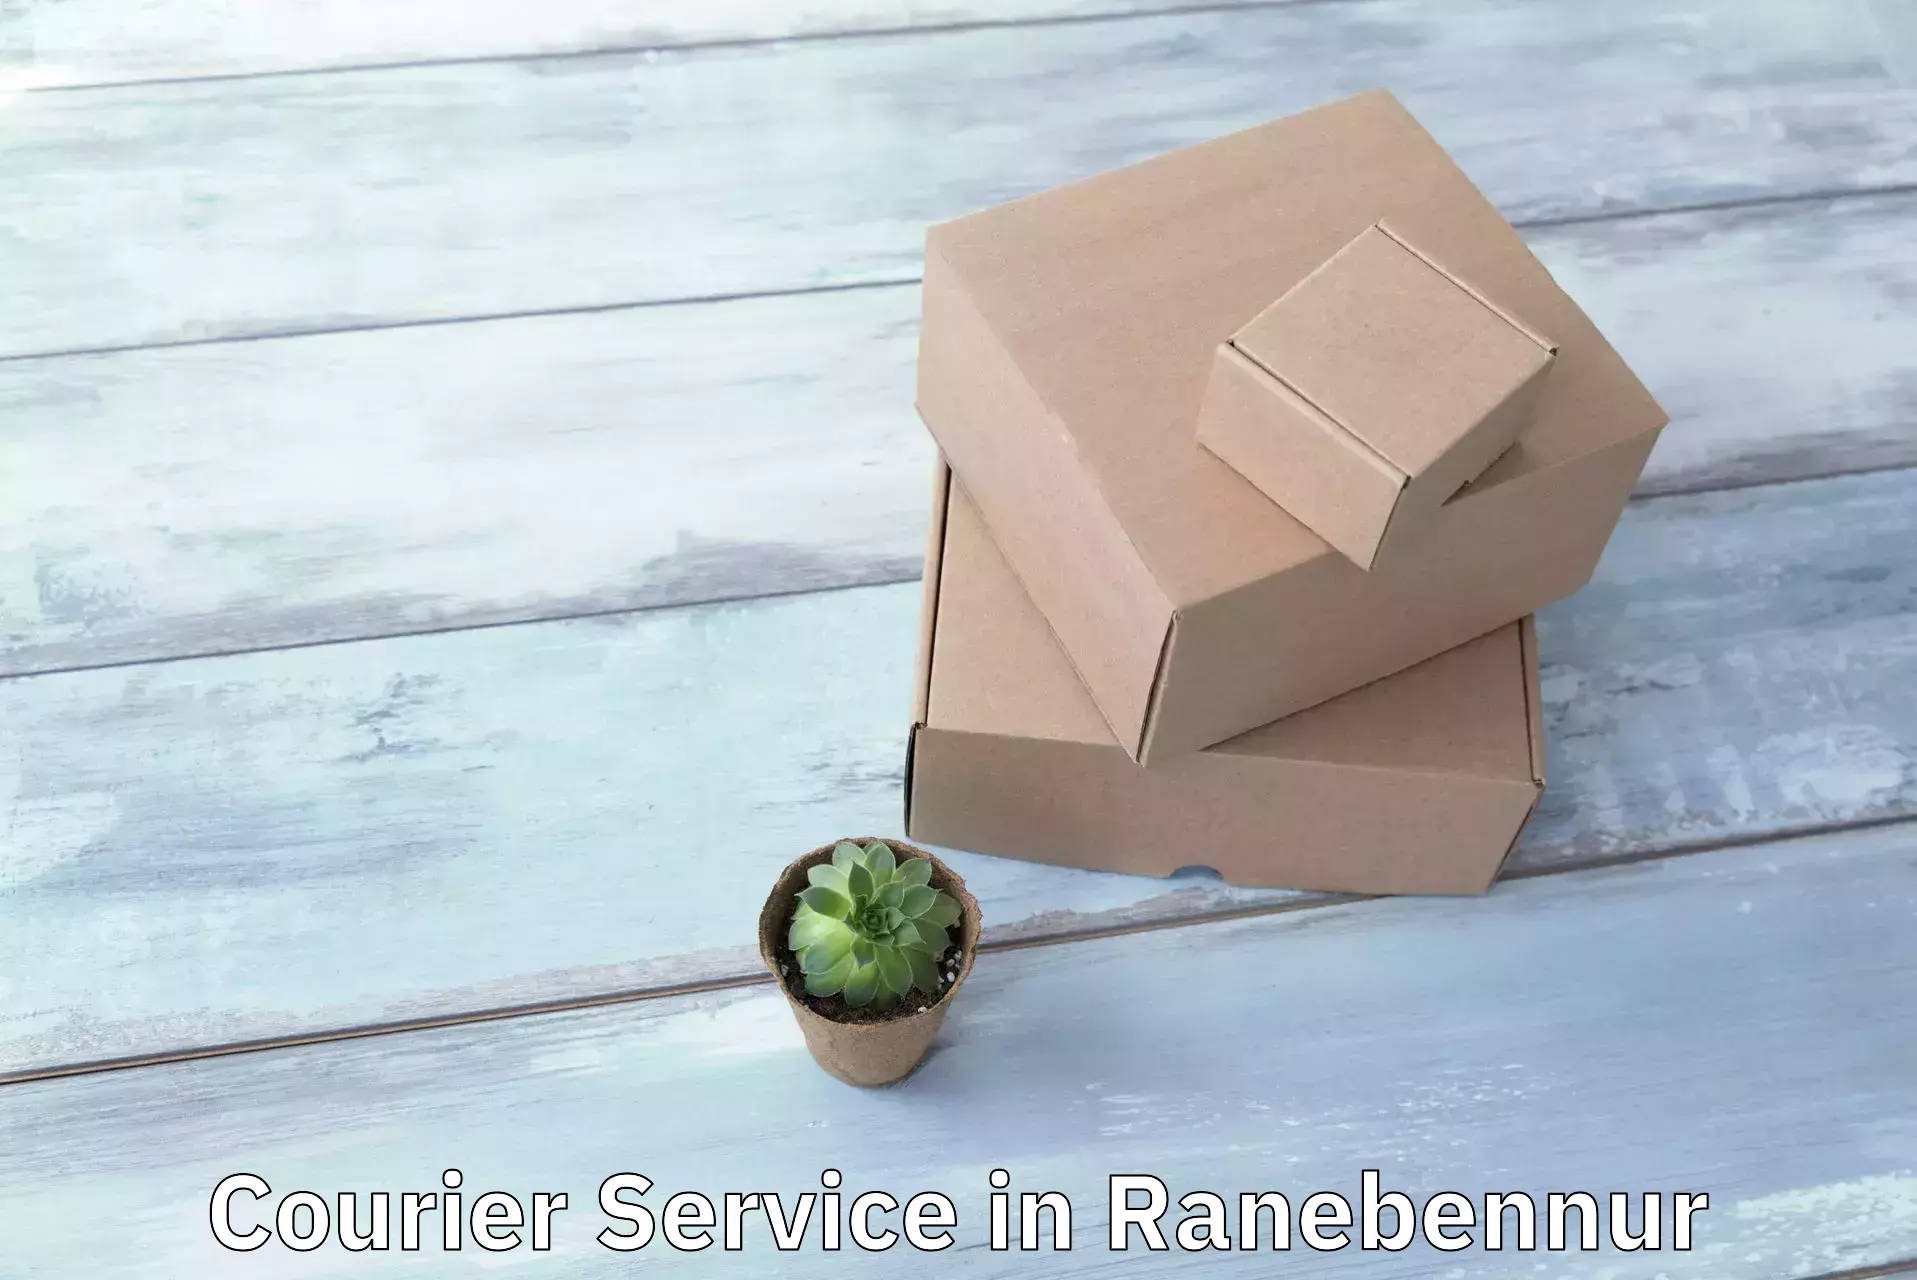 Courier service comparison in Ranebennur